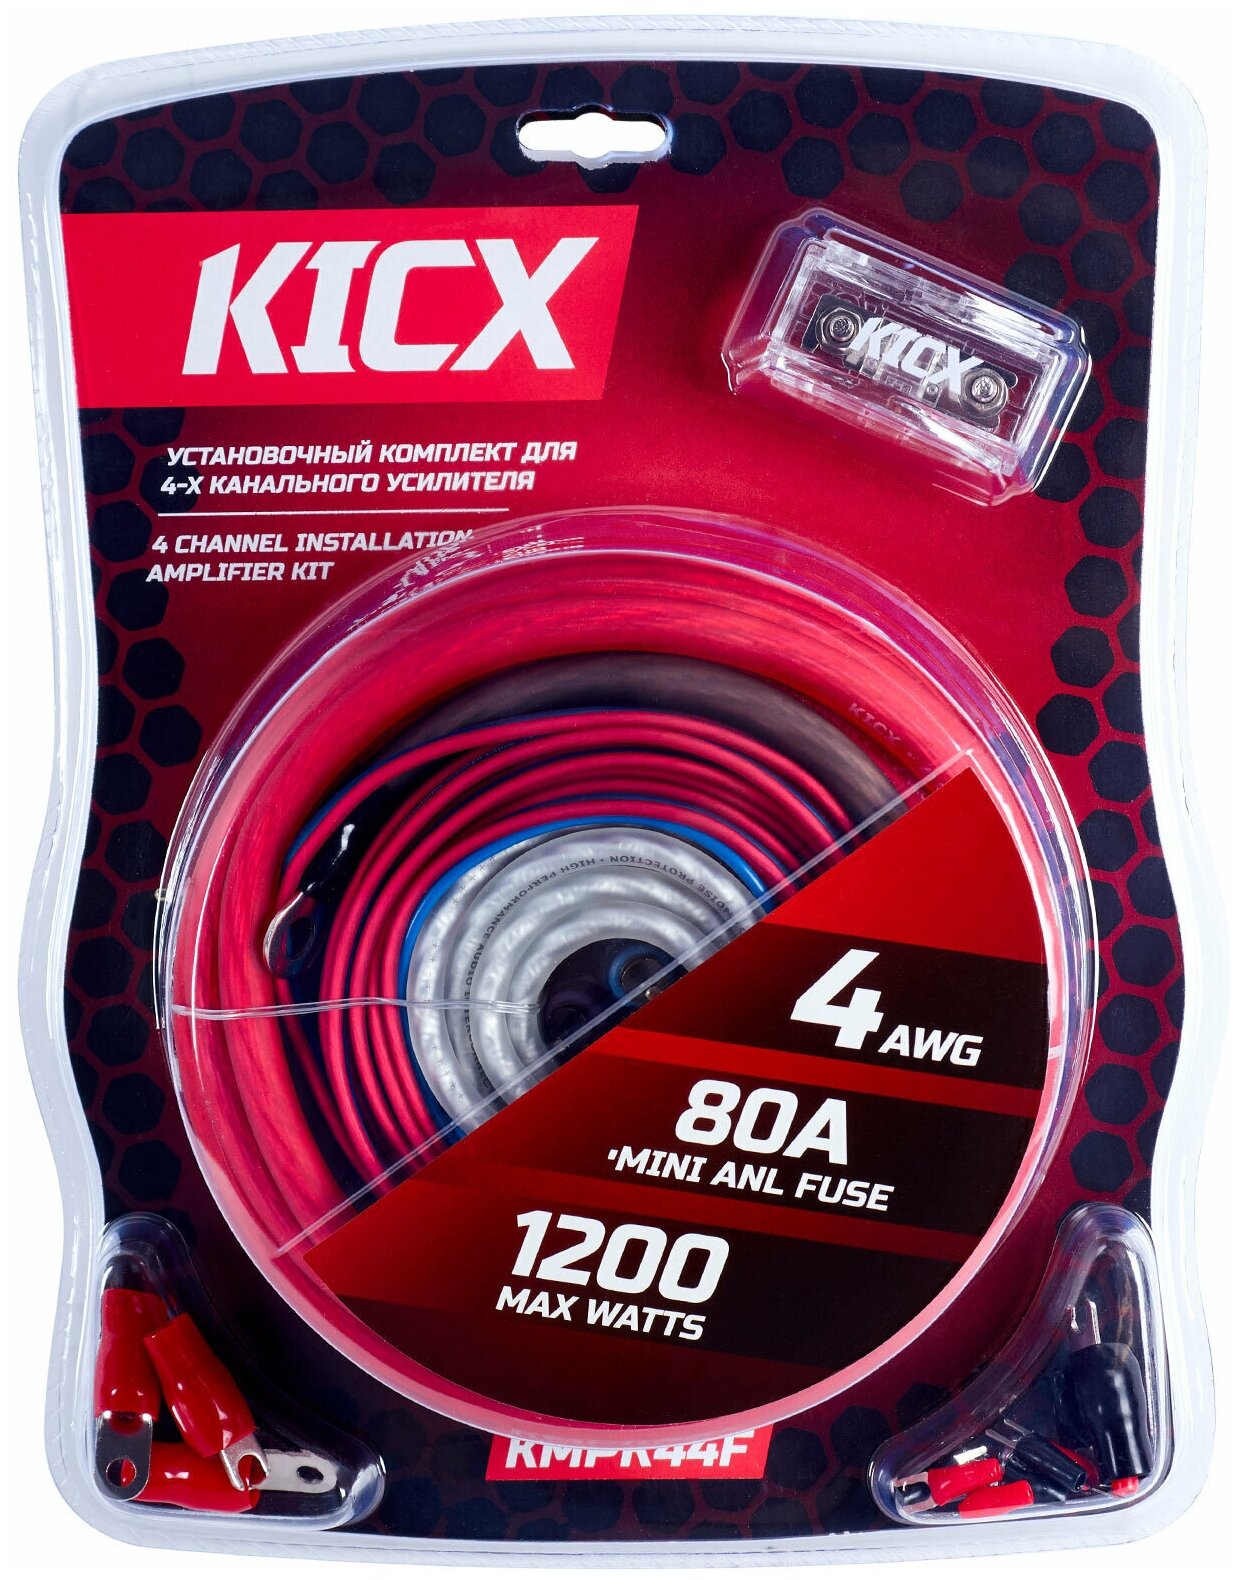 Установочный комплект для 4-х канального усилителя Kicx KMPK44F